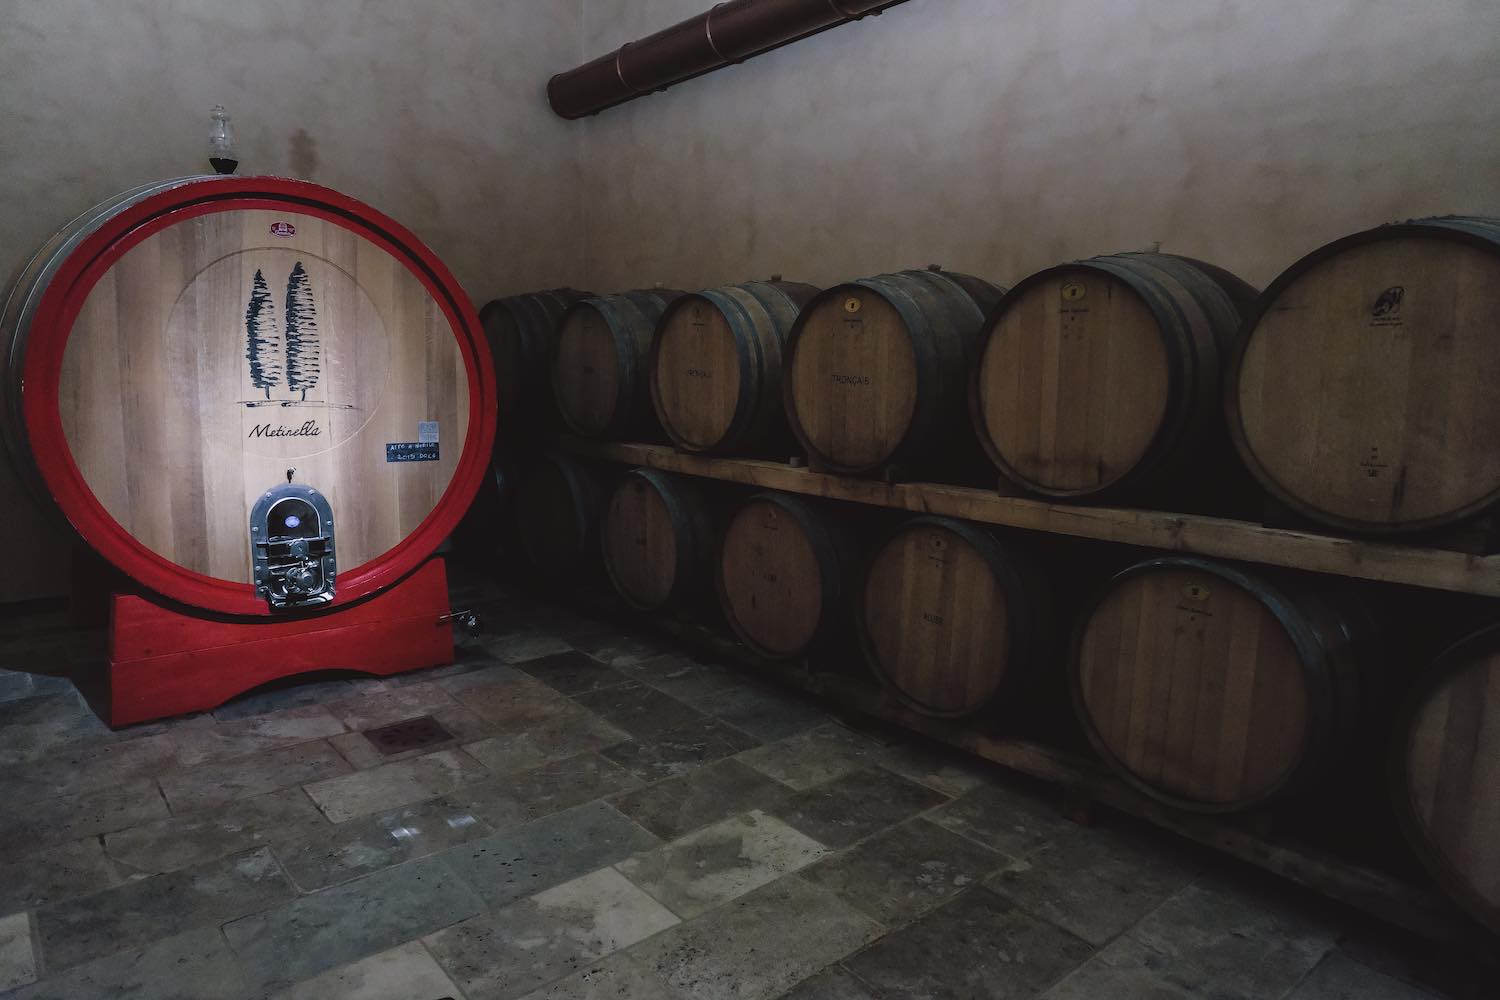 L'azienda vitivinicola Metinella a Montepulciano, offre vini di qualità, tour dell'azienda e degustazione di prodotti a km0 e cucina sana